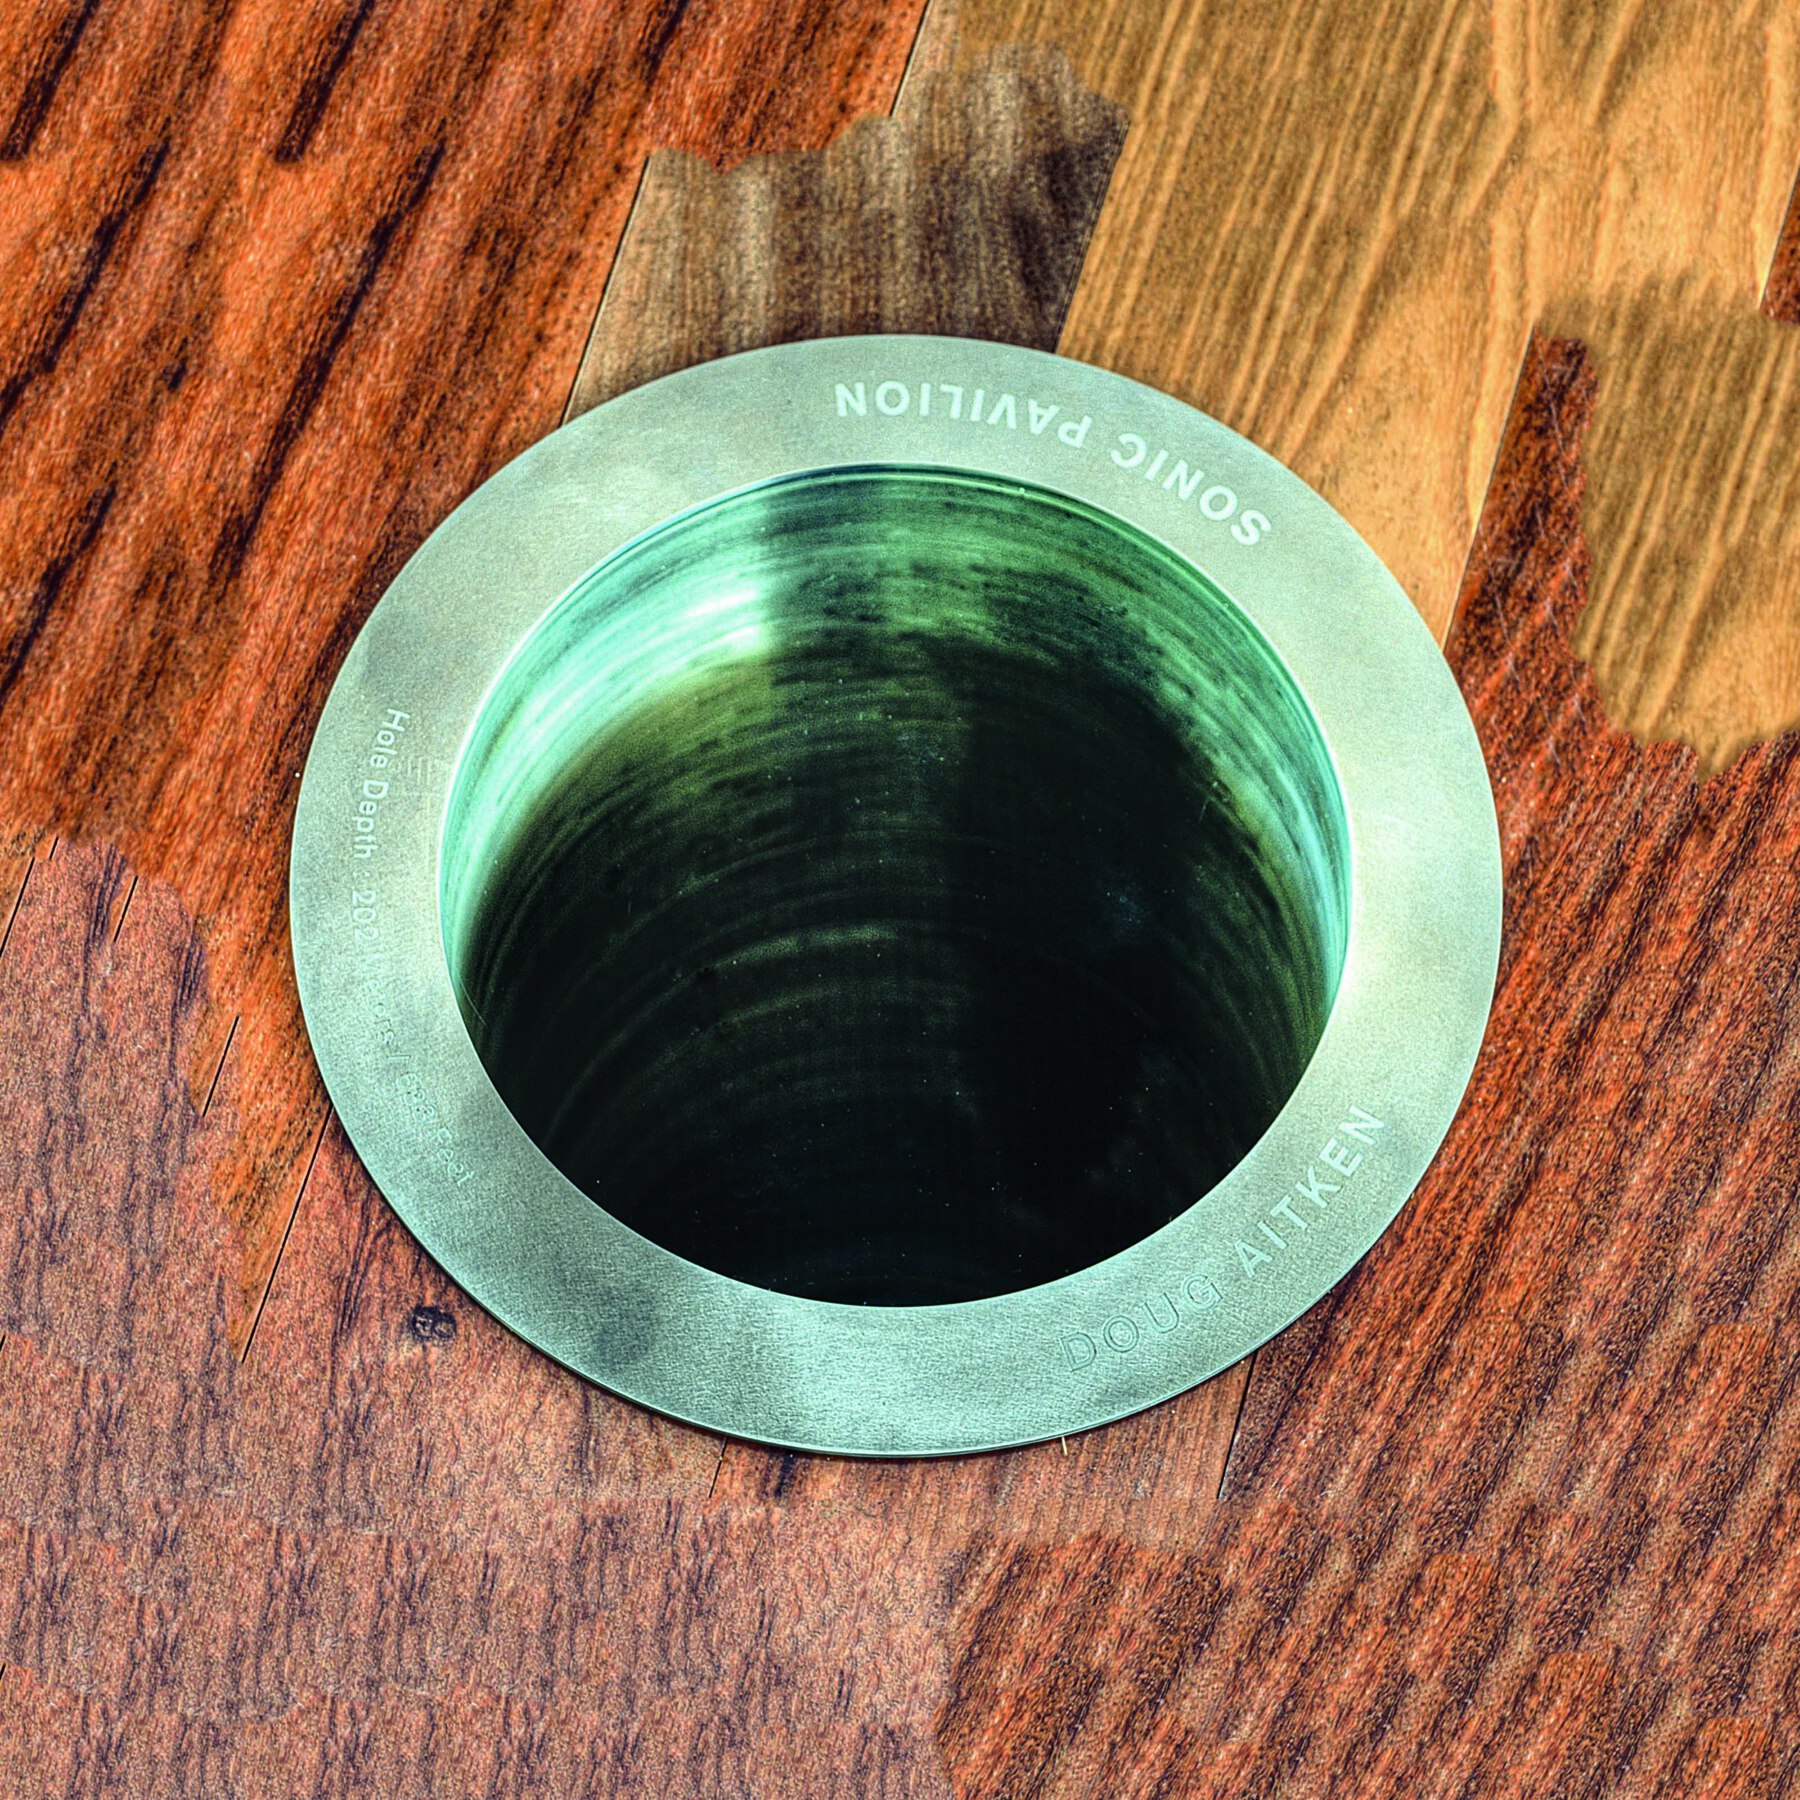 Fotografia. Destaque da abertura de um tubo circular metálico em uma superfície de madeira.